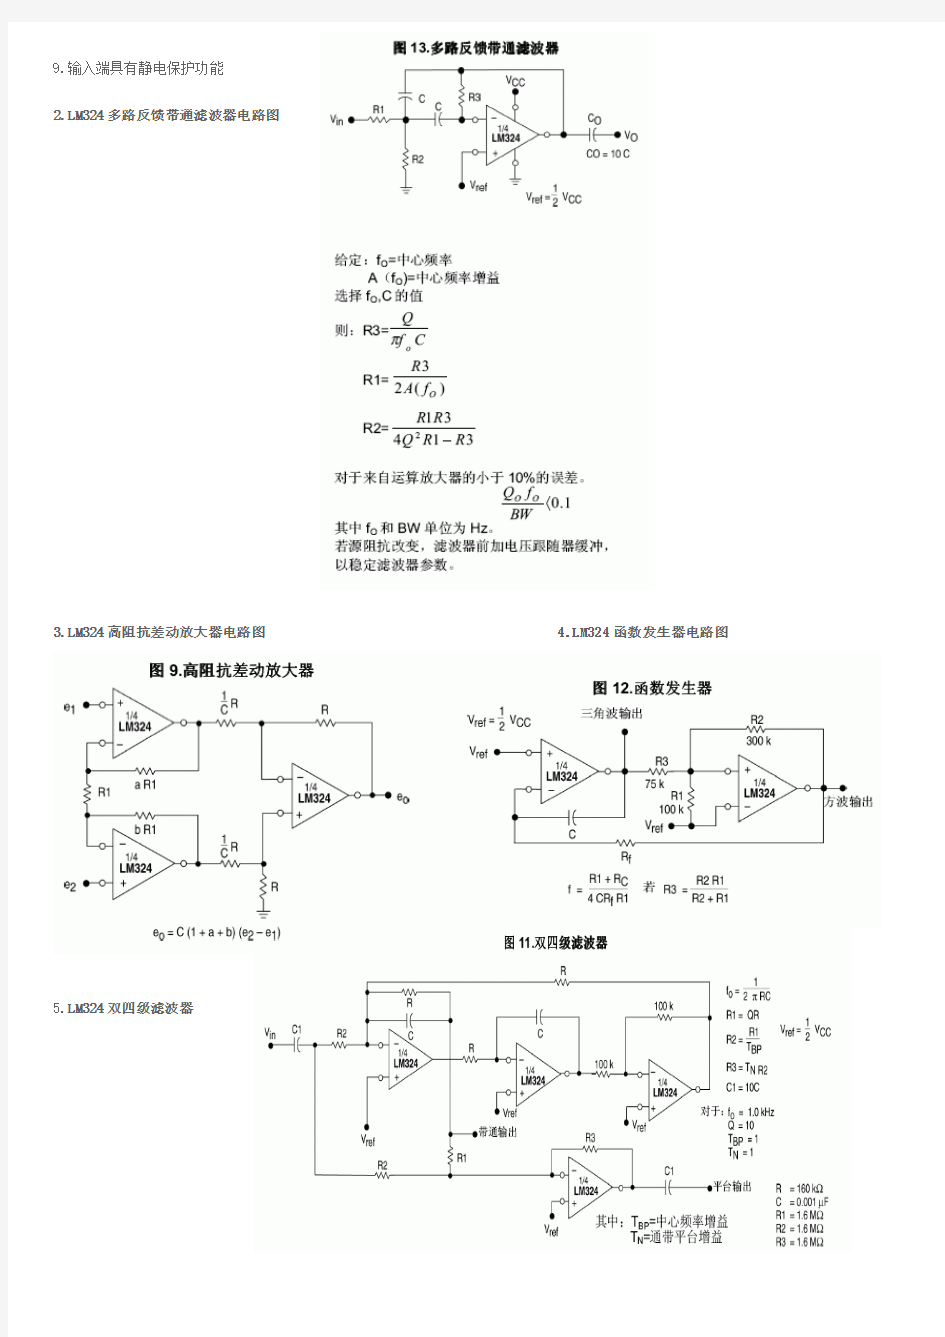 LM324引脚图 管脚图 LM324应用电路